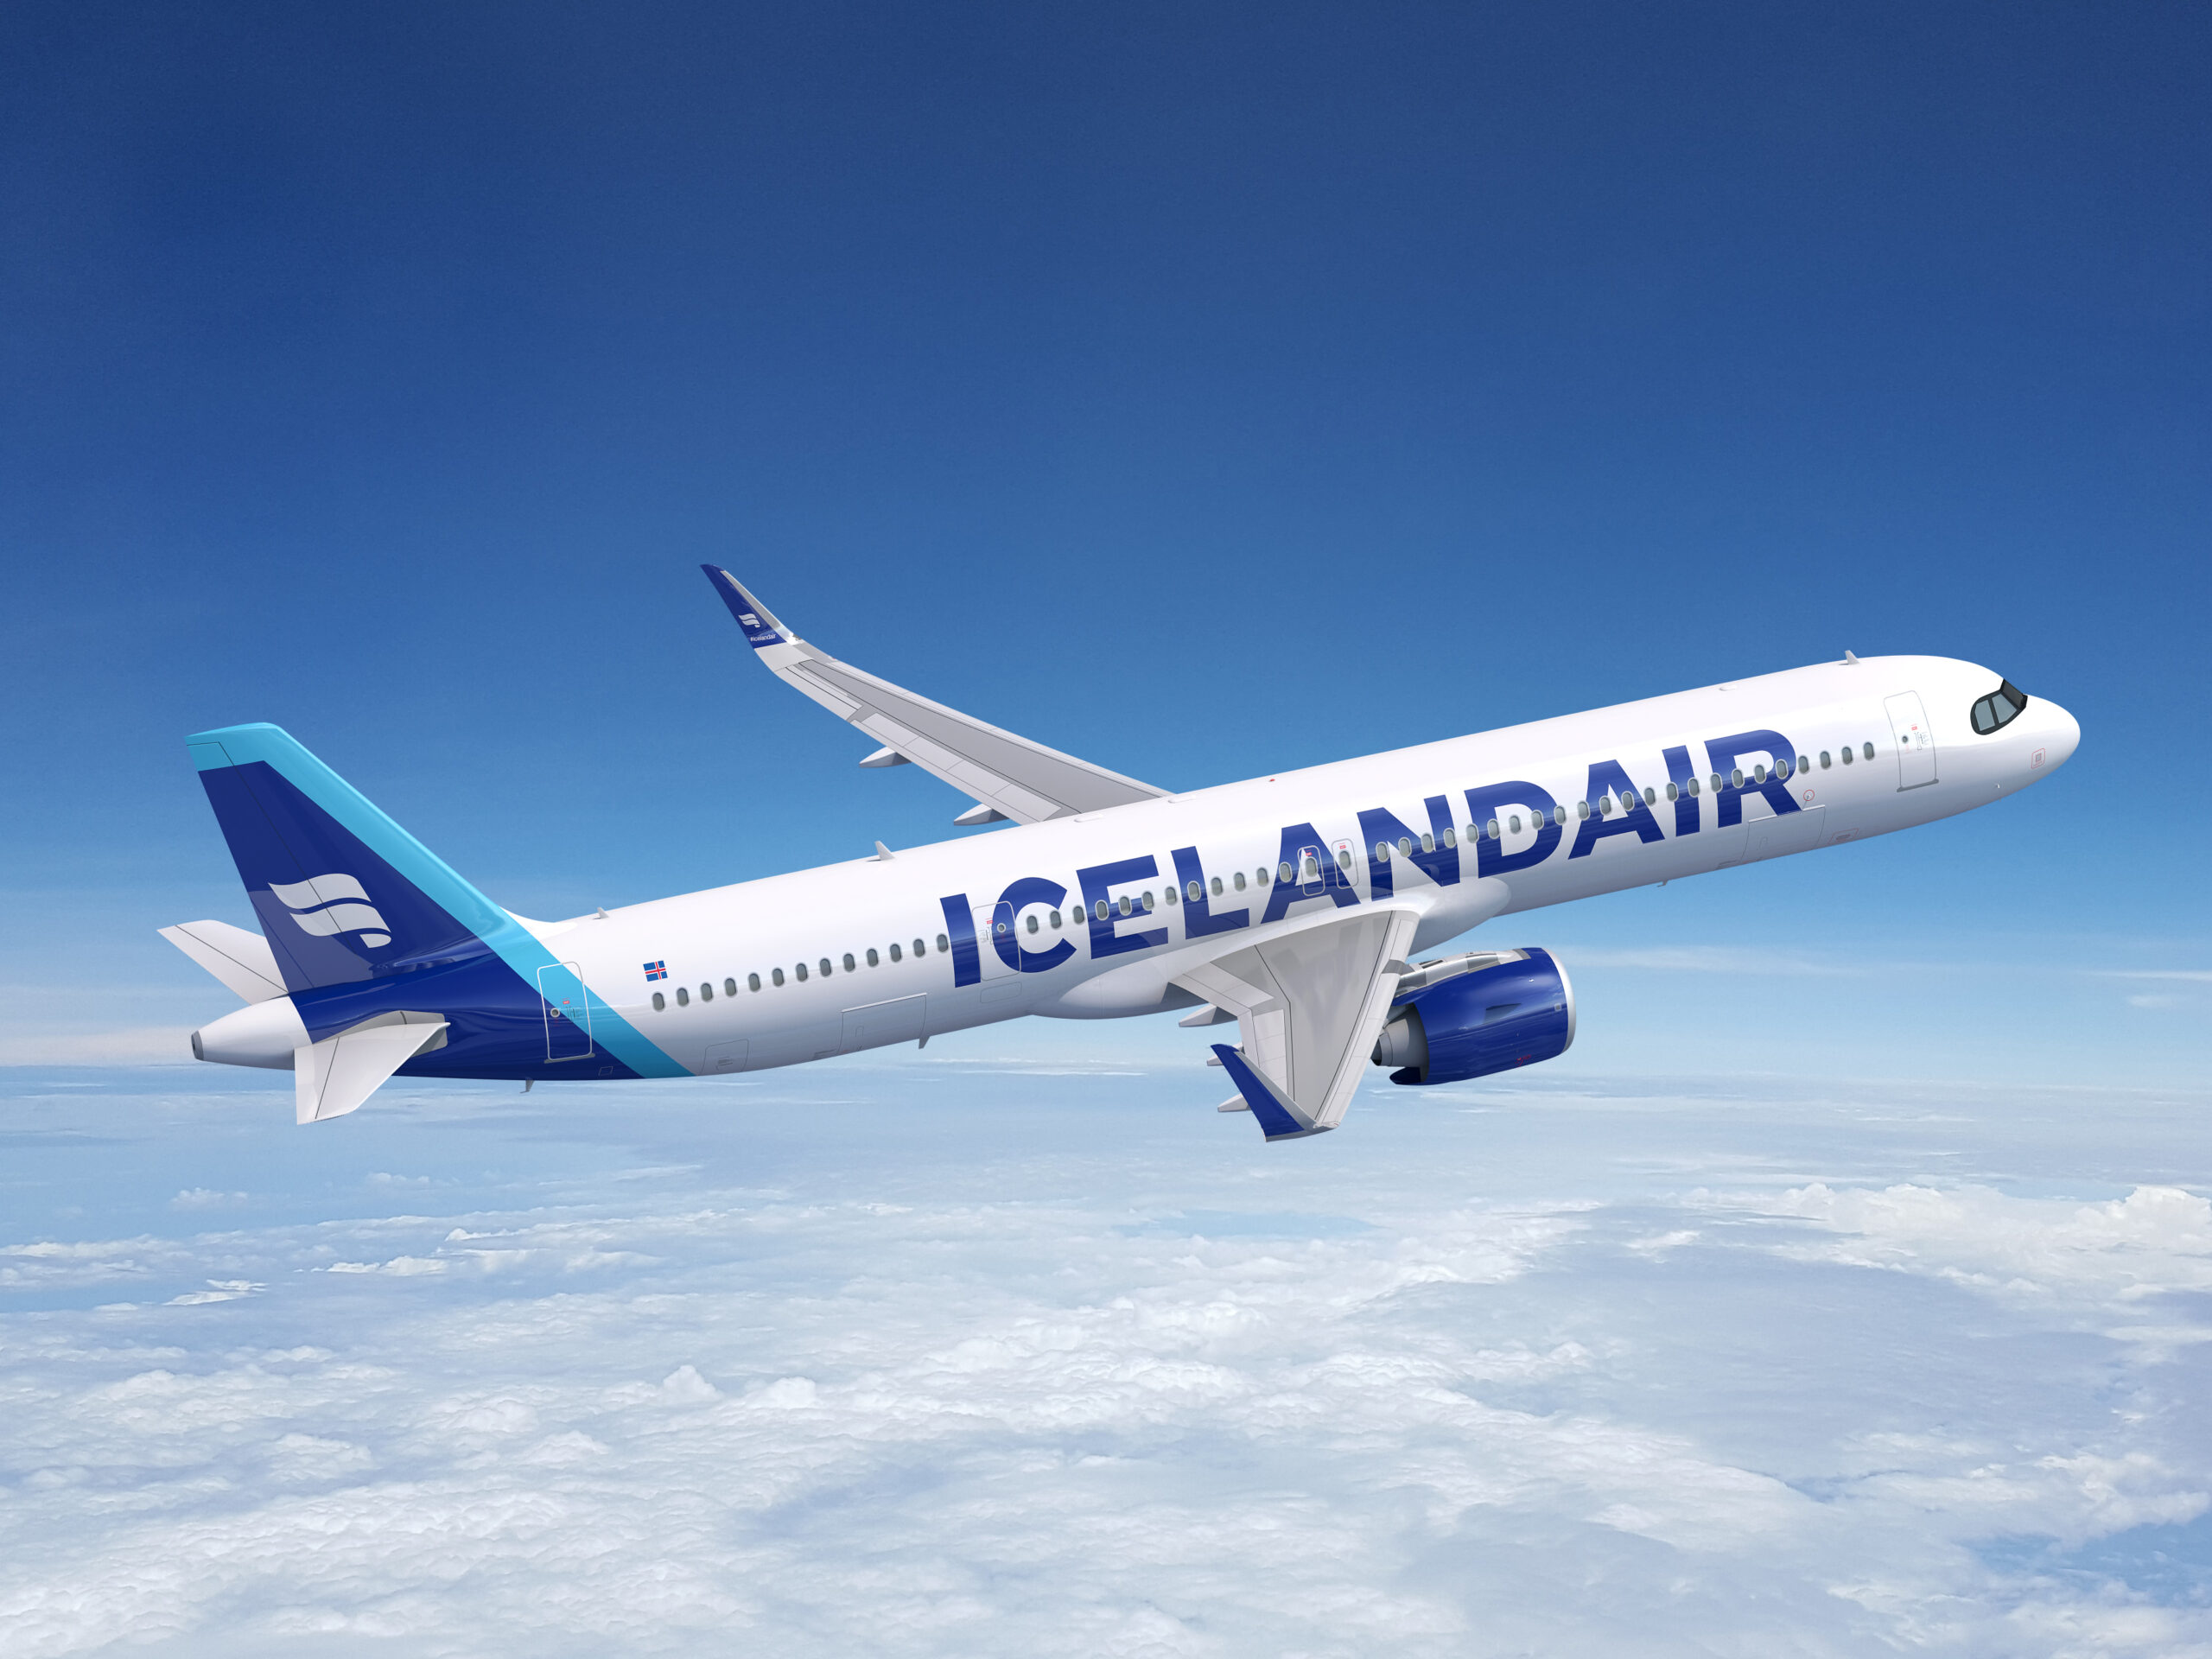 Photo of: Icelandair Airbus A321XLR // Airbus